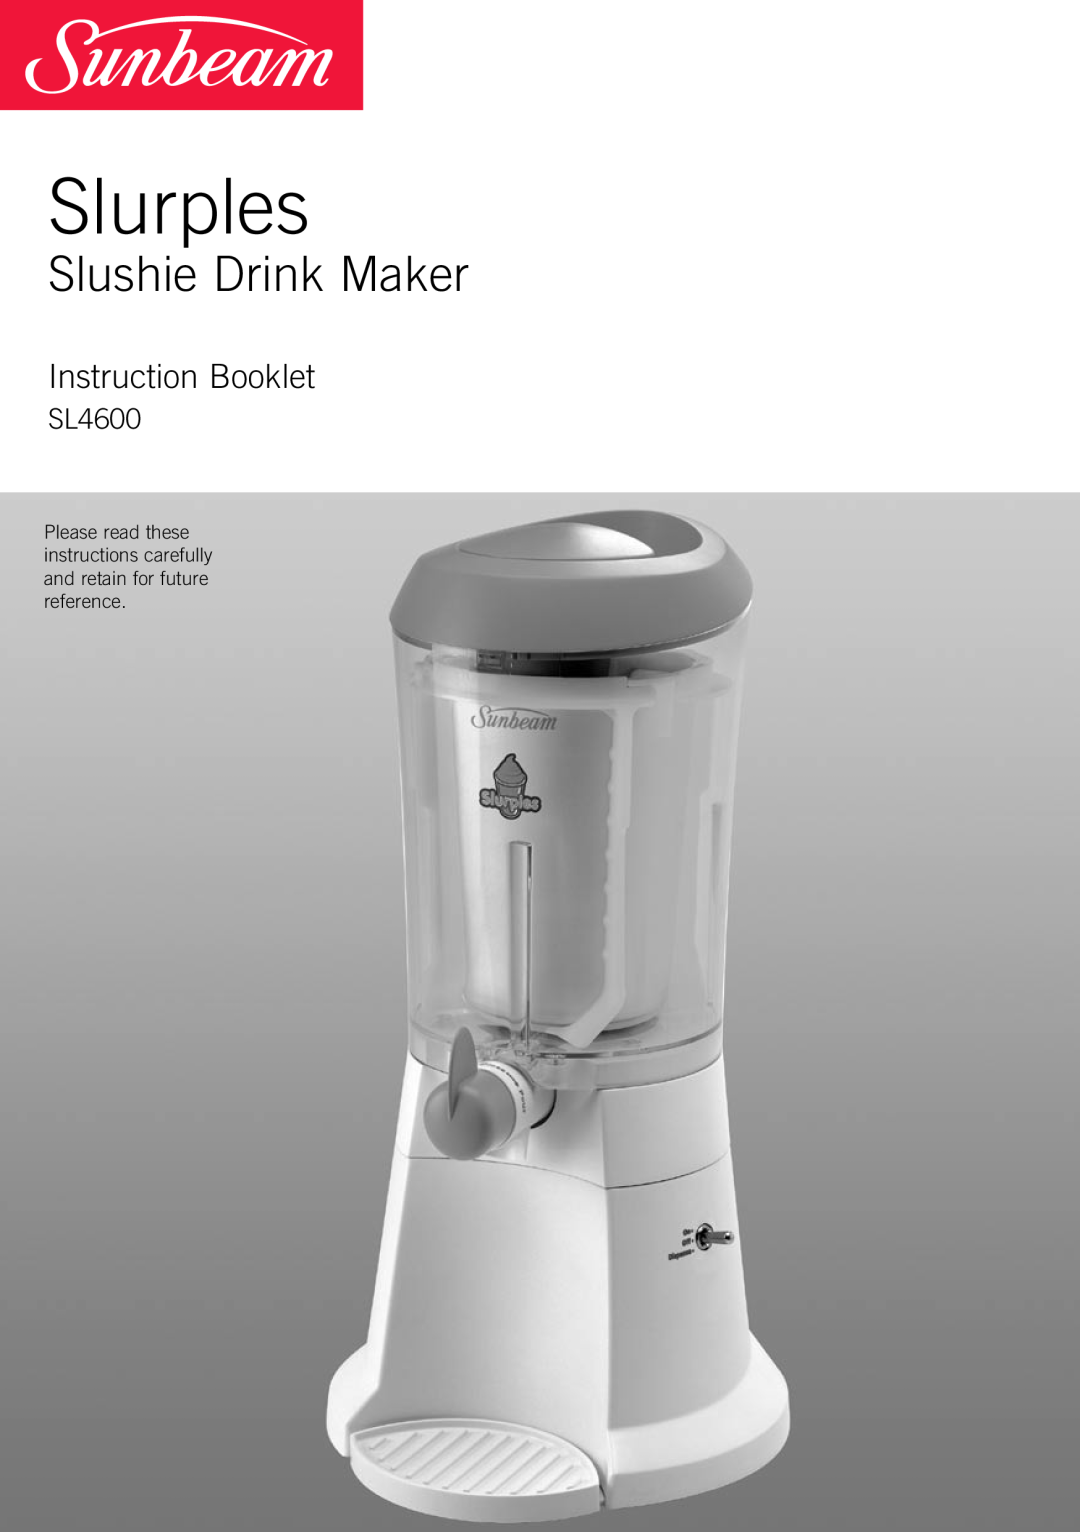 Sunbeam SL4600 manual Slurples, Slushie Drink Maker, Instruction Booklet 